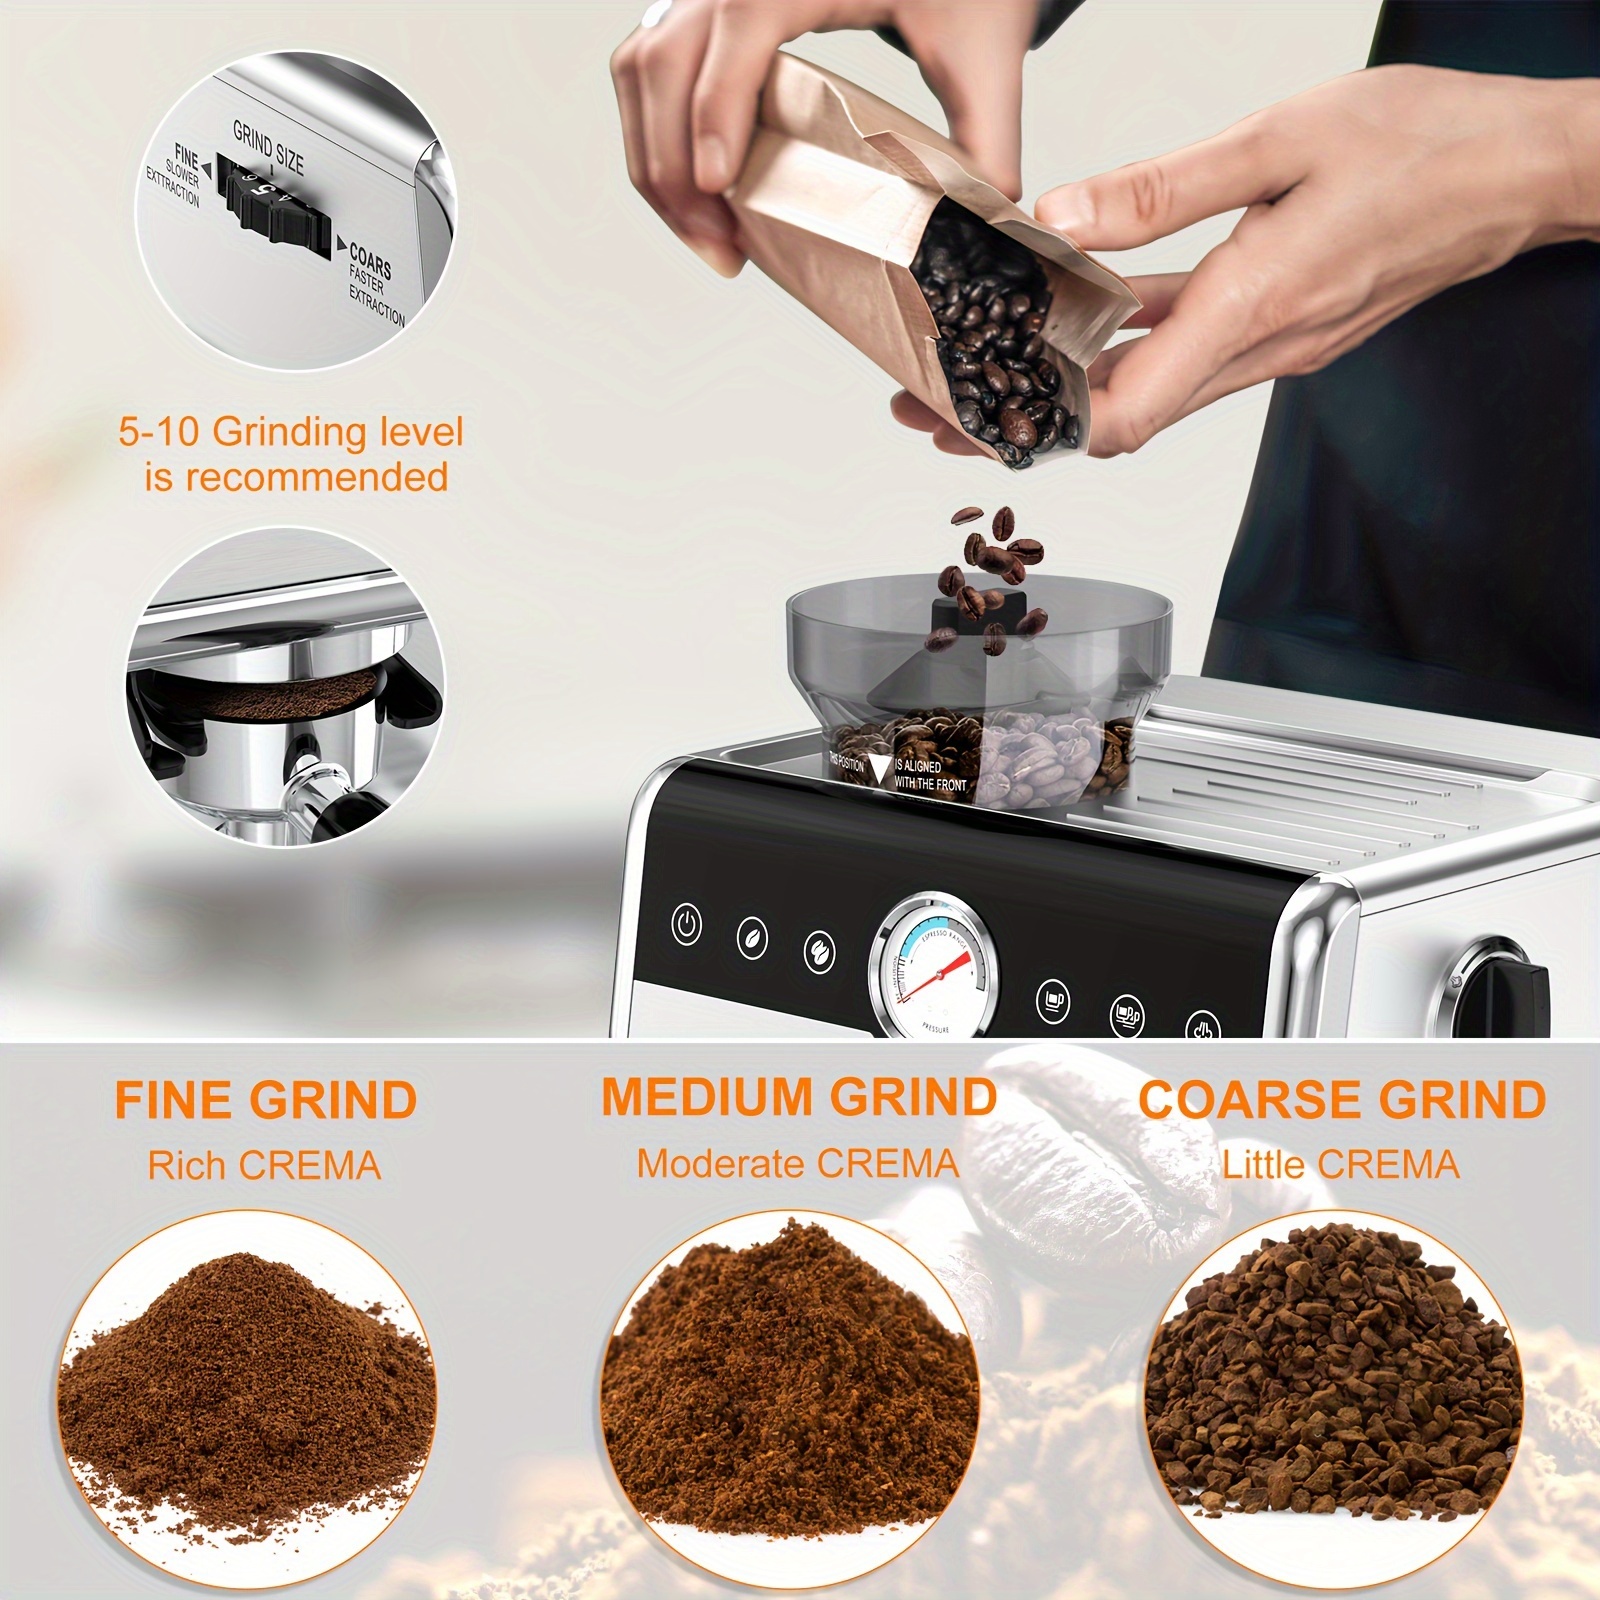 All-in-One Coffee & Espresso Maker, Cappuccino, Latte Machine +